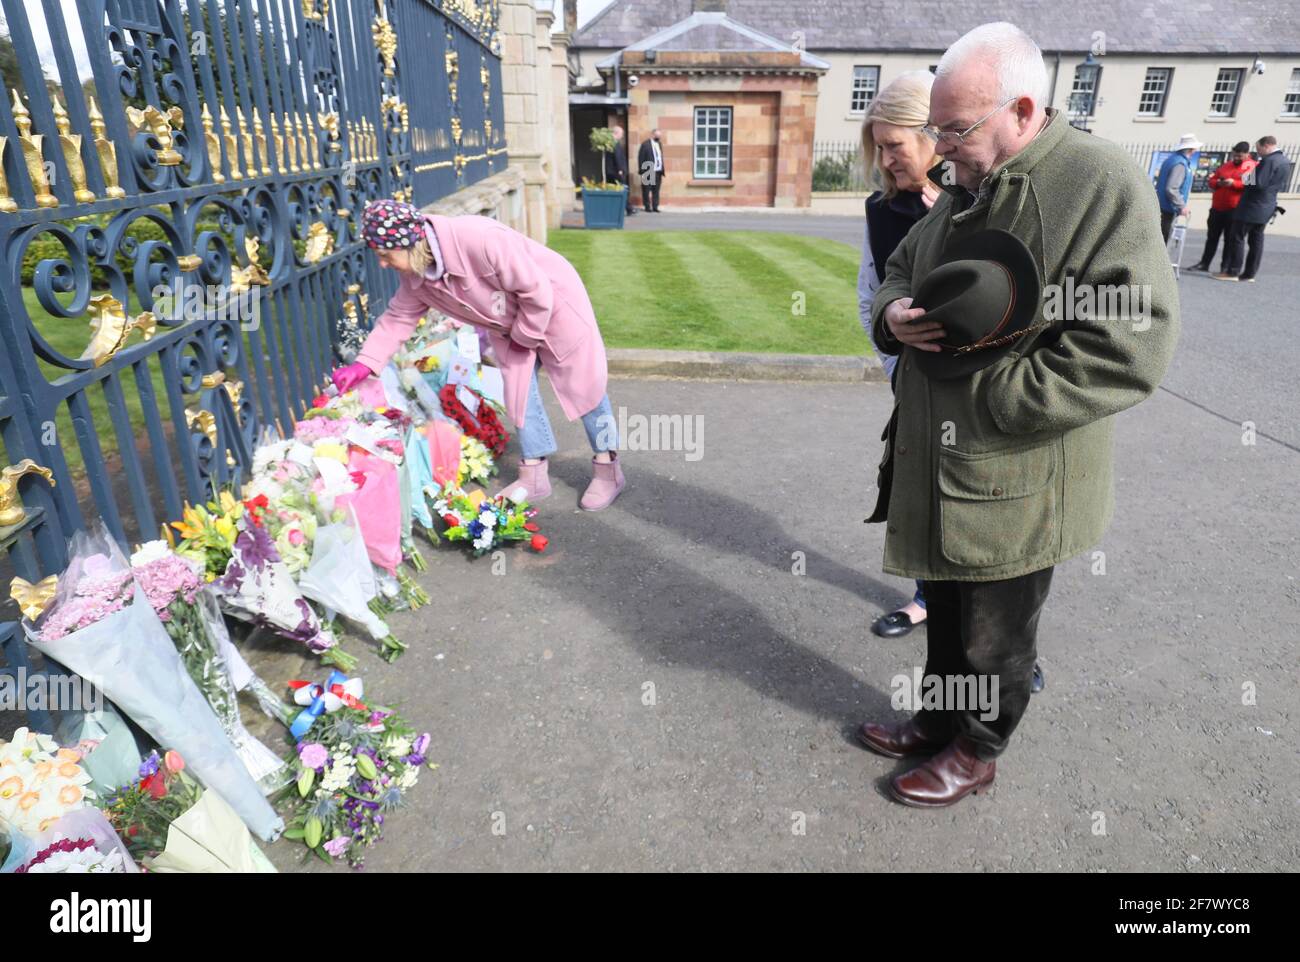 Nach der Bekanntgabe des Todes des Herzogs von Edinburgh im Alter von 99 Jahren legen Mitglieder der Öffentlichkeit Blumen und zollen ihren Respekt vor den Toren von Hillsborough Castle in Nordirland. Bilddatum: Samstag, 10. April 2021. Stockfoto